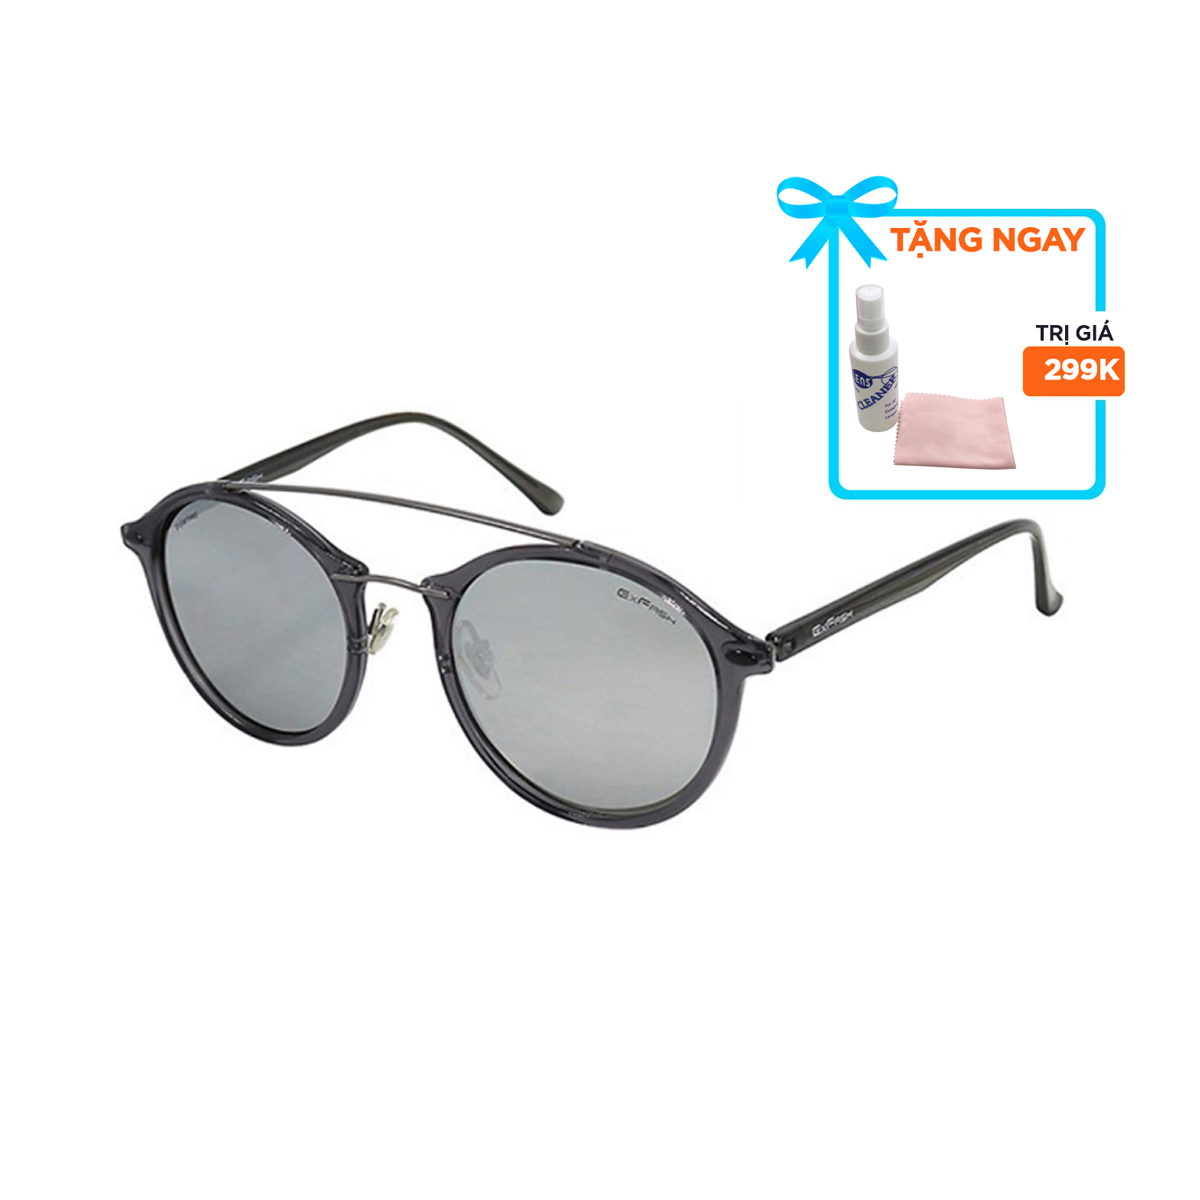 Kính mát, mắt kính chính hãng Exfash EF36760 C41 - Tặng 1 nước và khăn lau kính